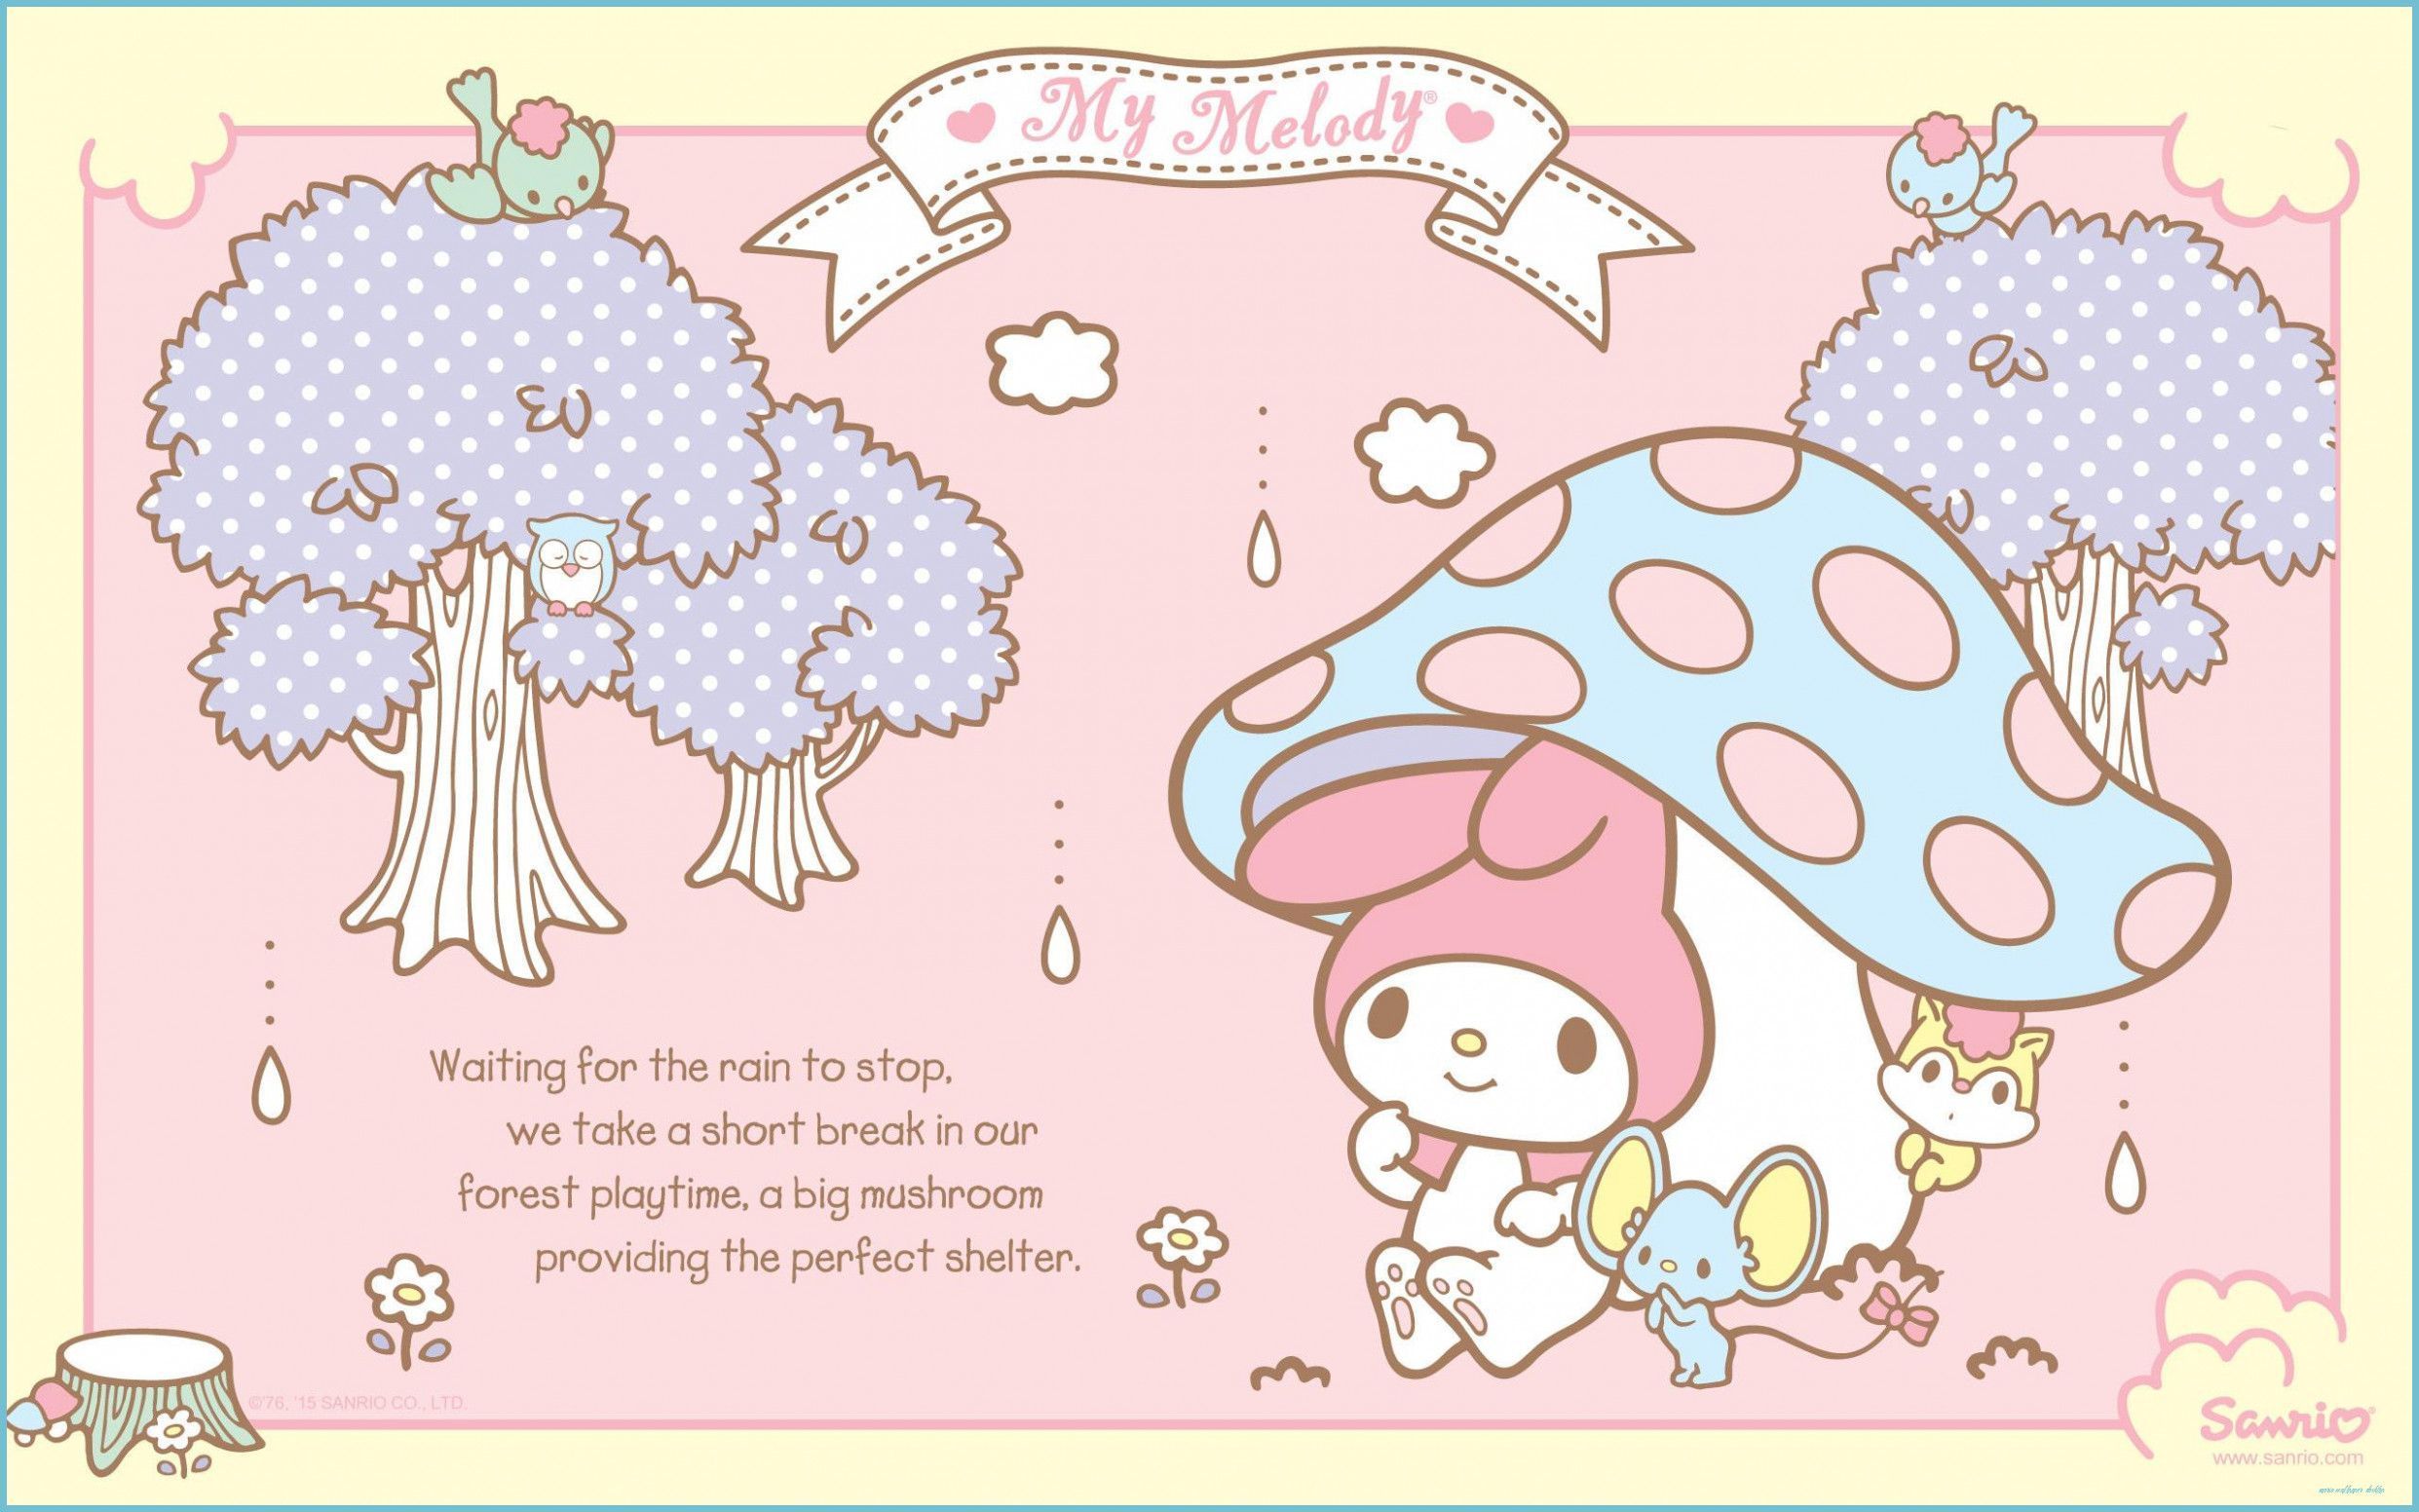 A cute cartoon character is sitting underneath an umbrella - Sanrio